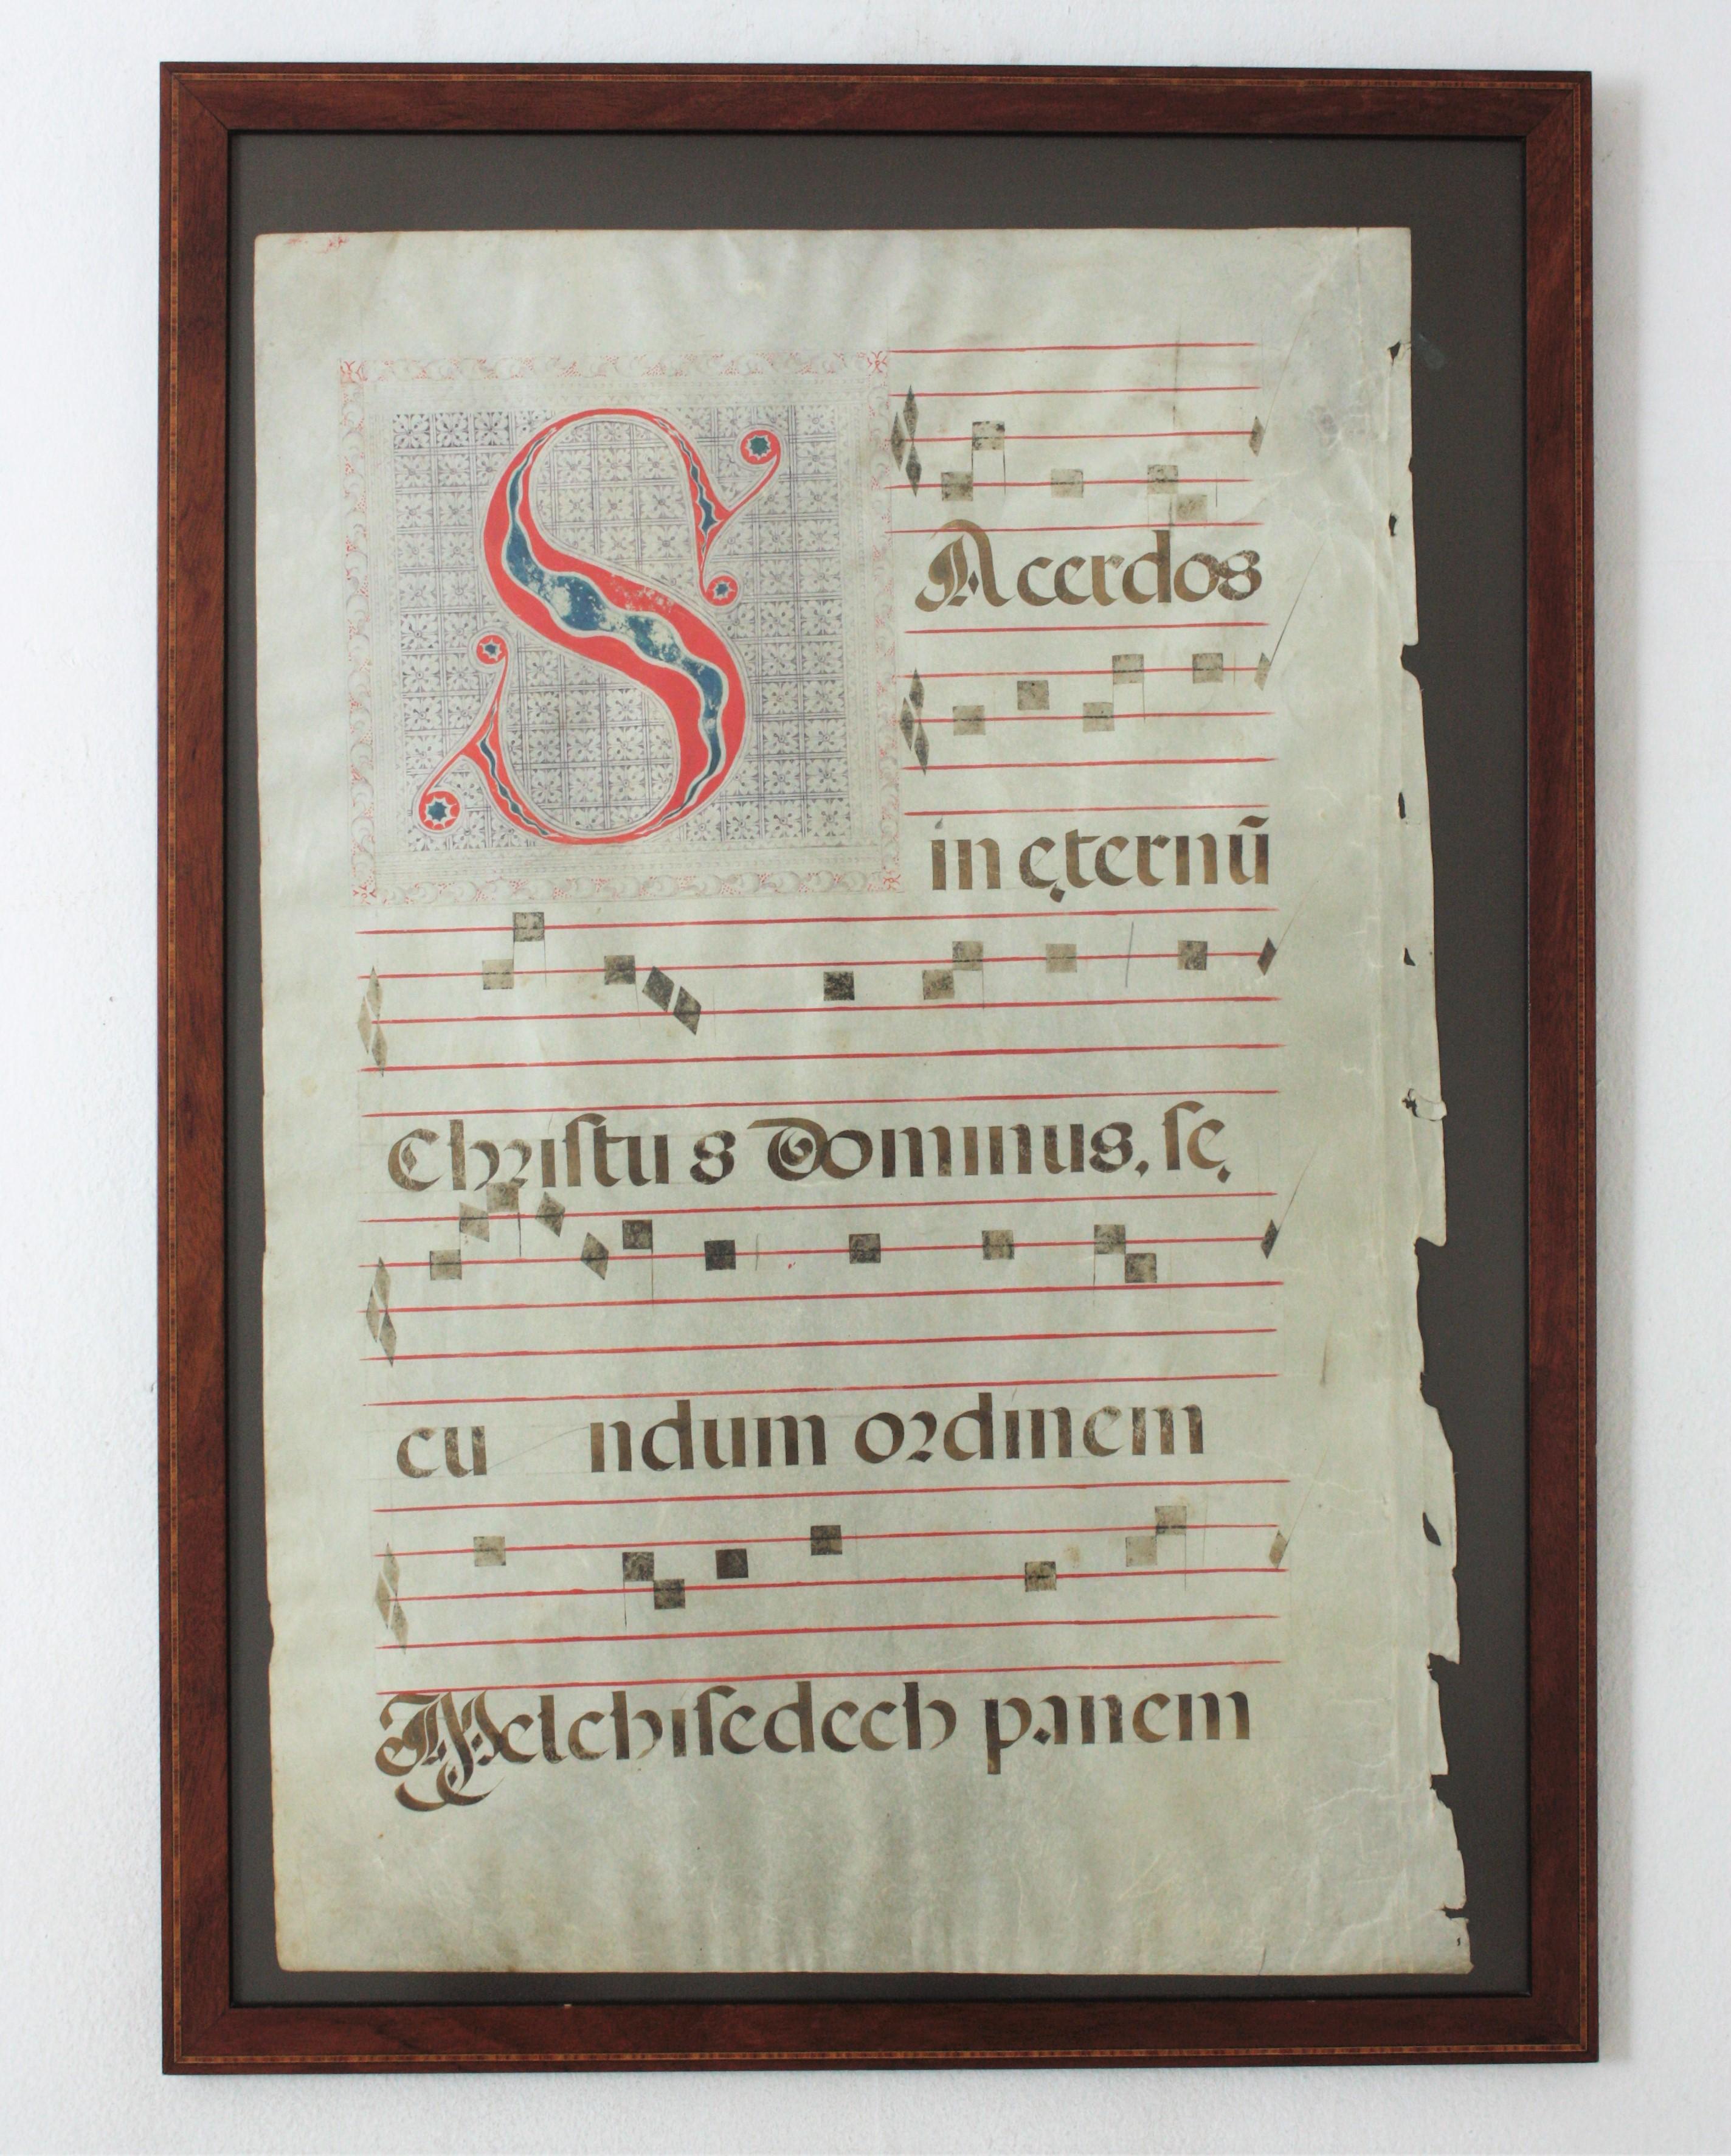 Großes Manuskriptblatt mit gregorianischen Gesängen auf Pergament
